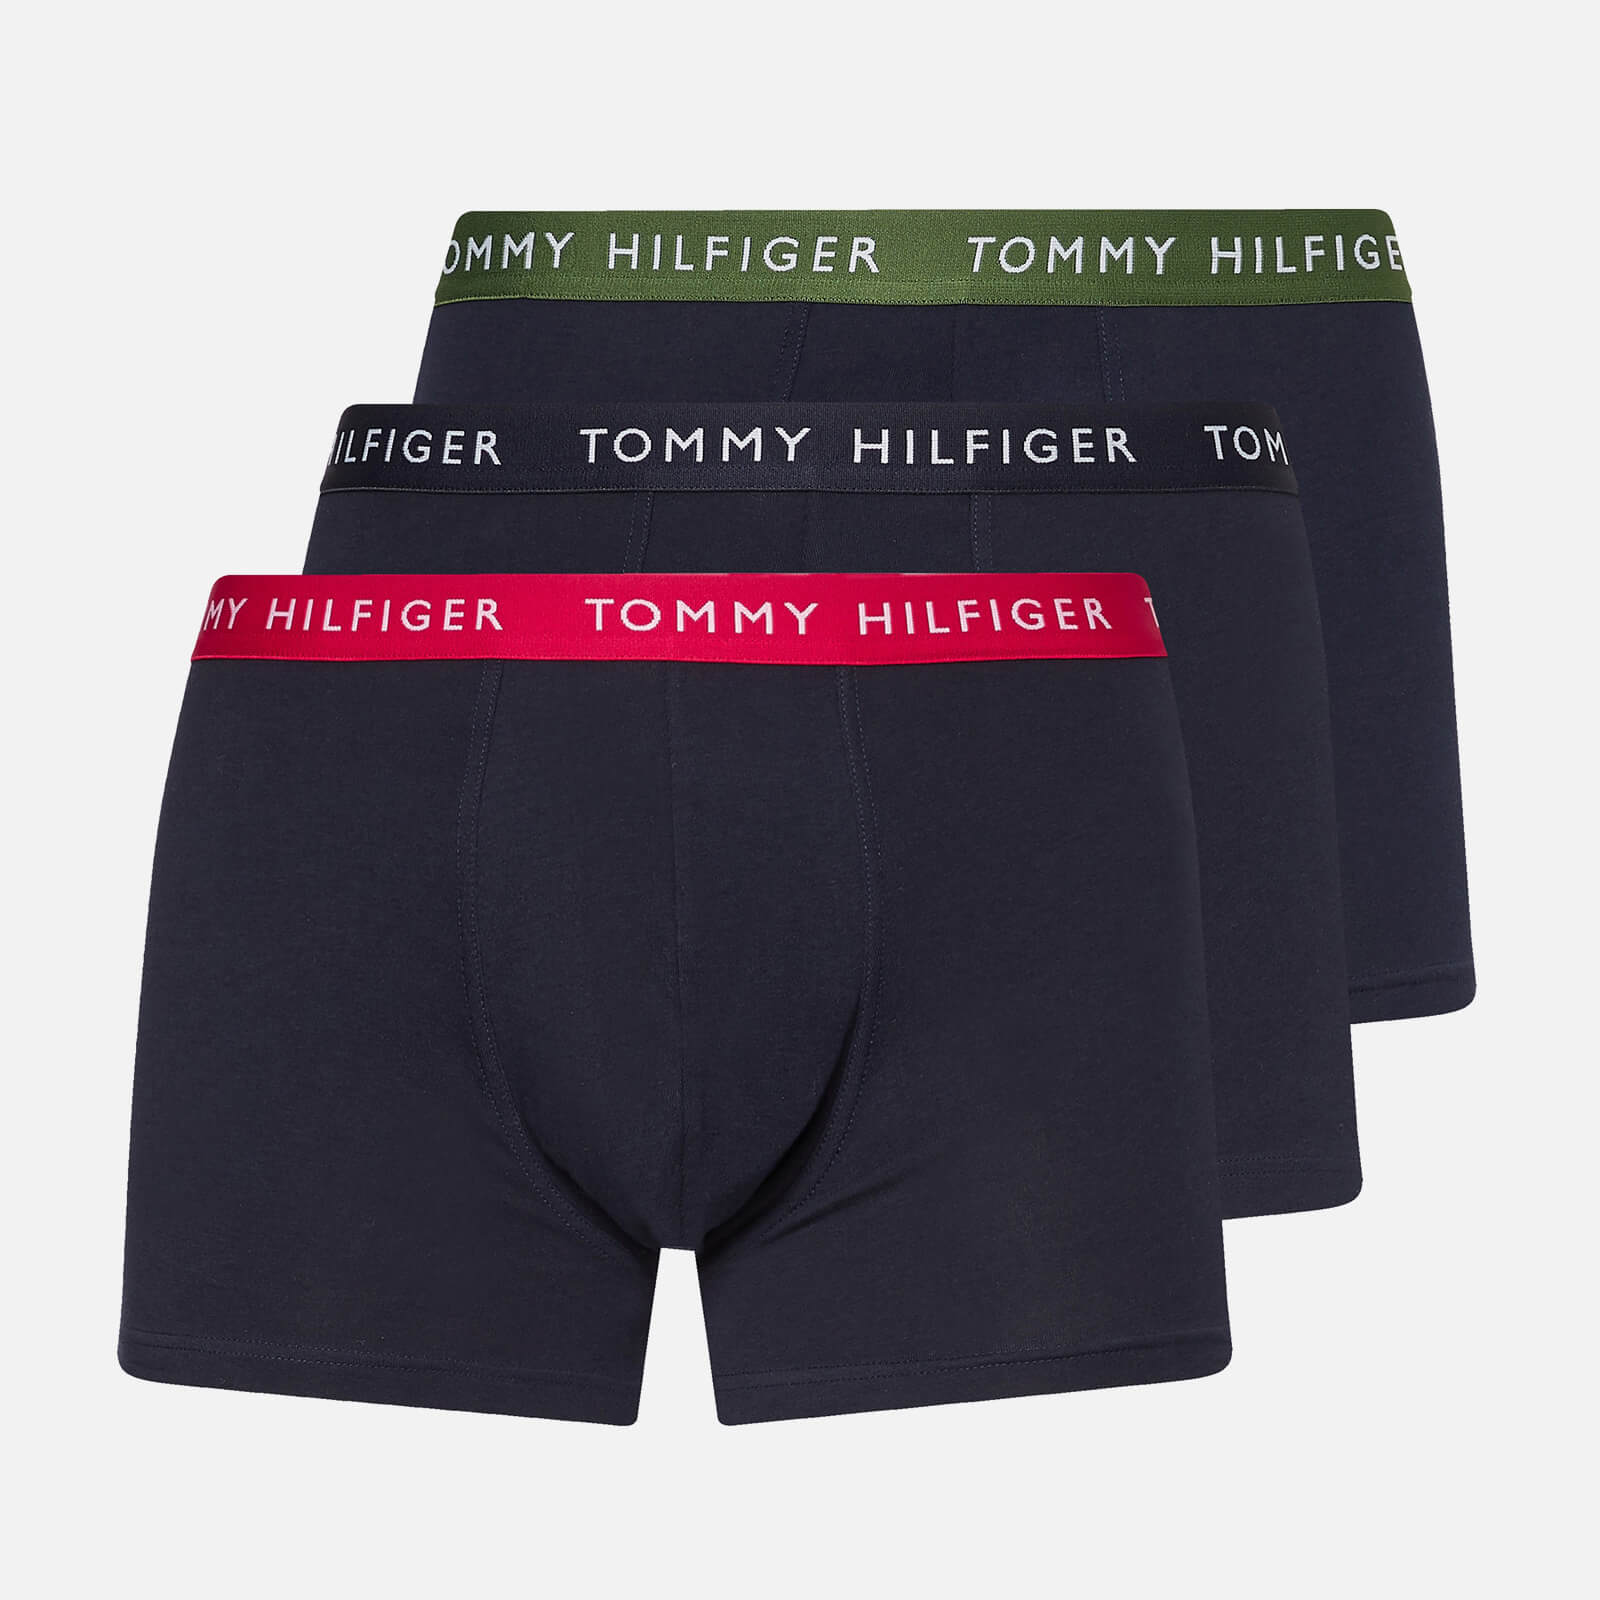 Tommy Hilfiger Men's 3-Pack Contrast Waistband Trunks - Blaze Red/Desert Sky/Golfway Green - XL